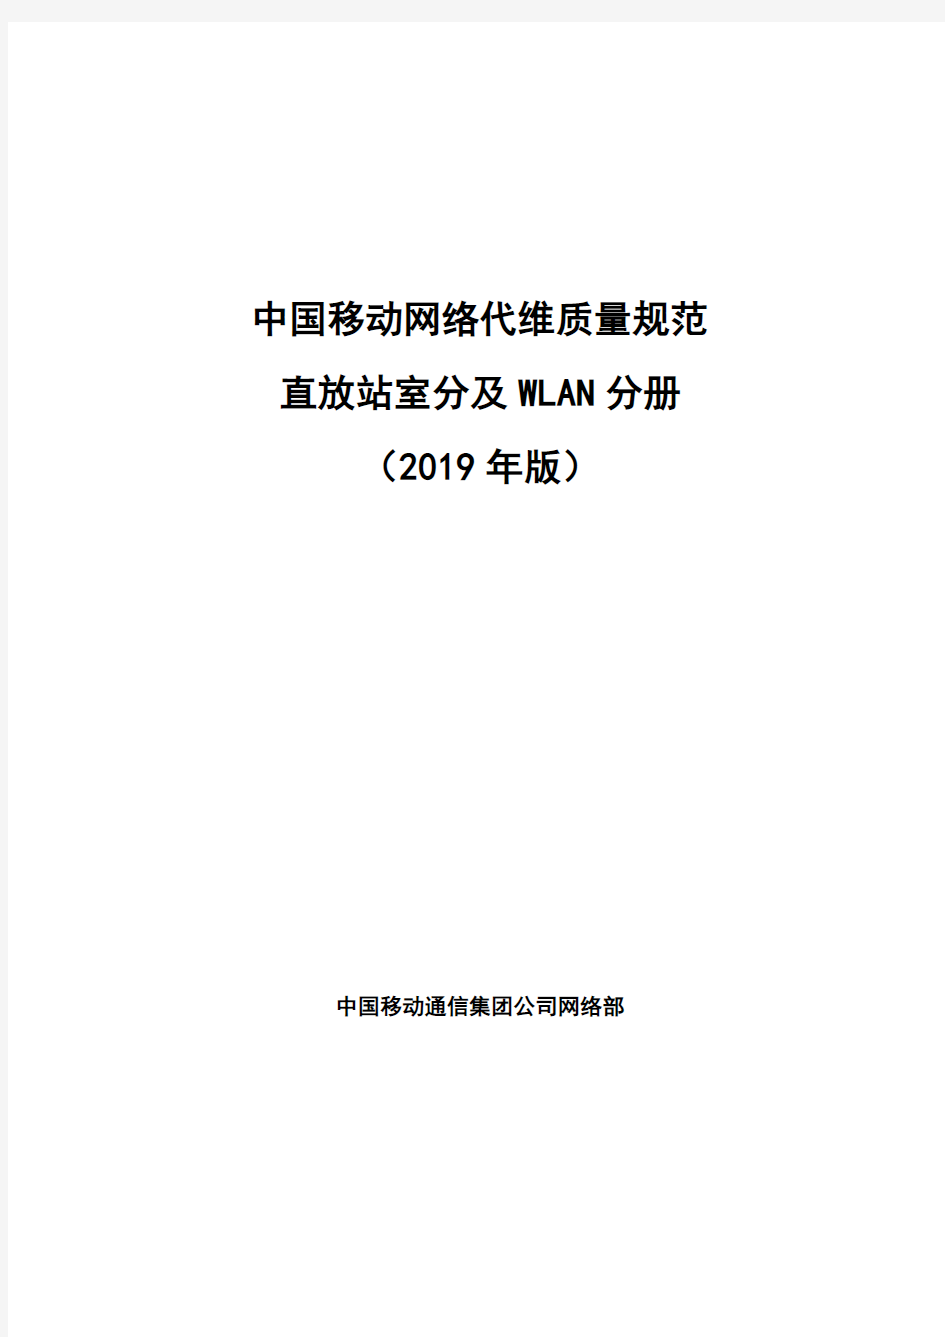 中国移动网络代维质量规范-直放站室分及WLAN分册